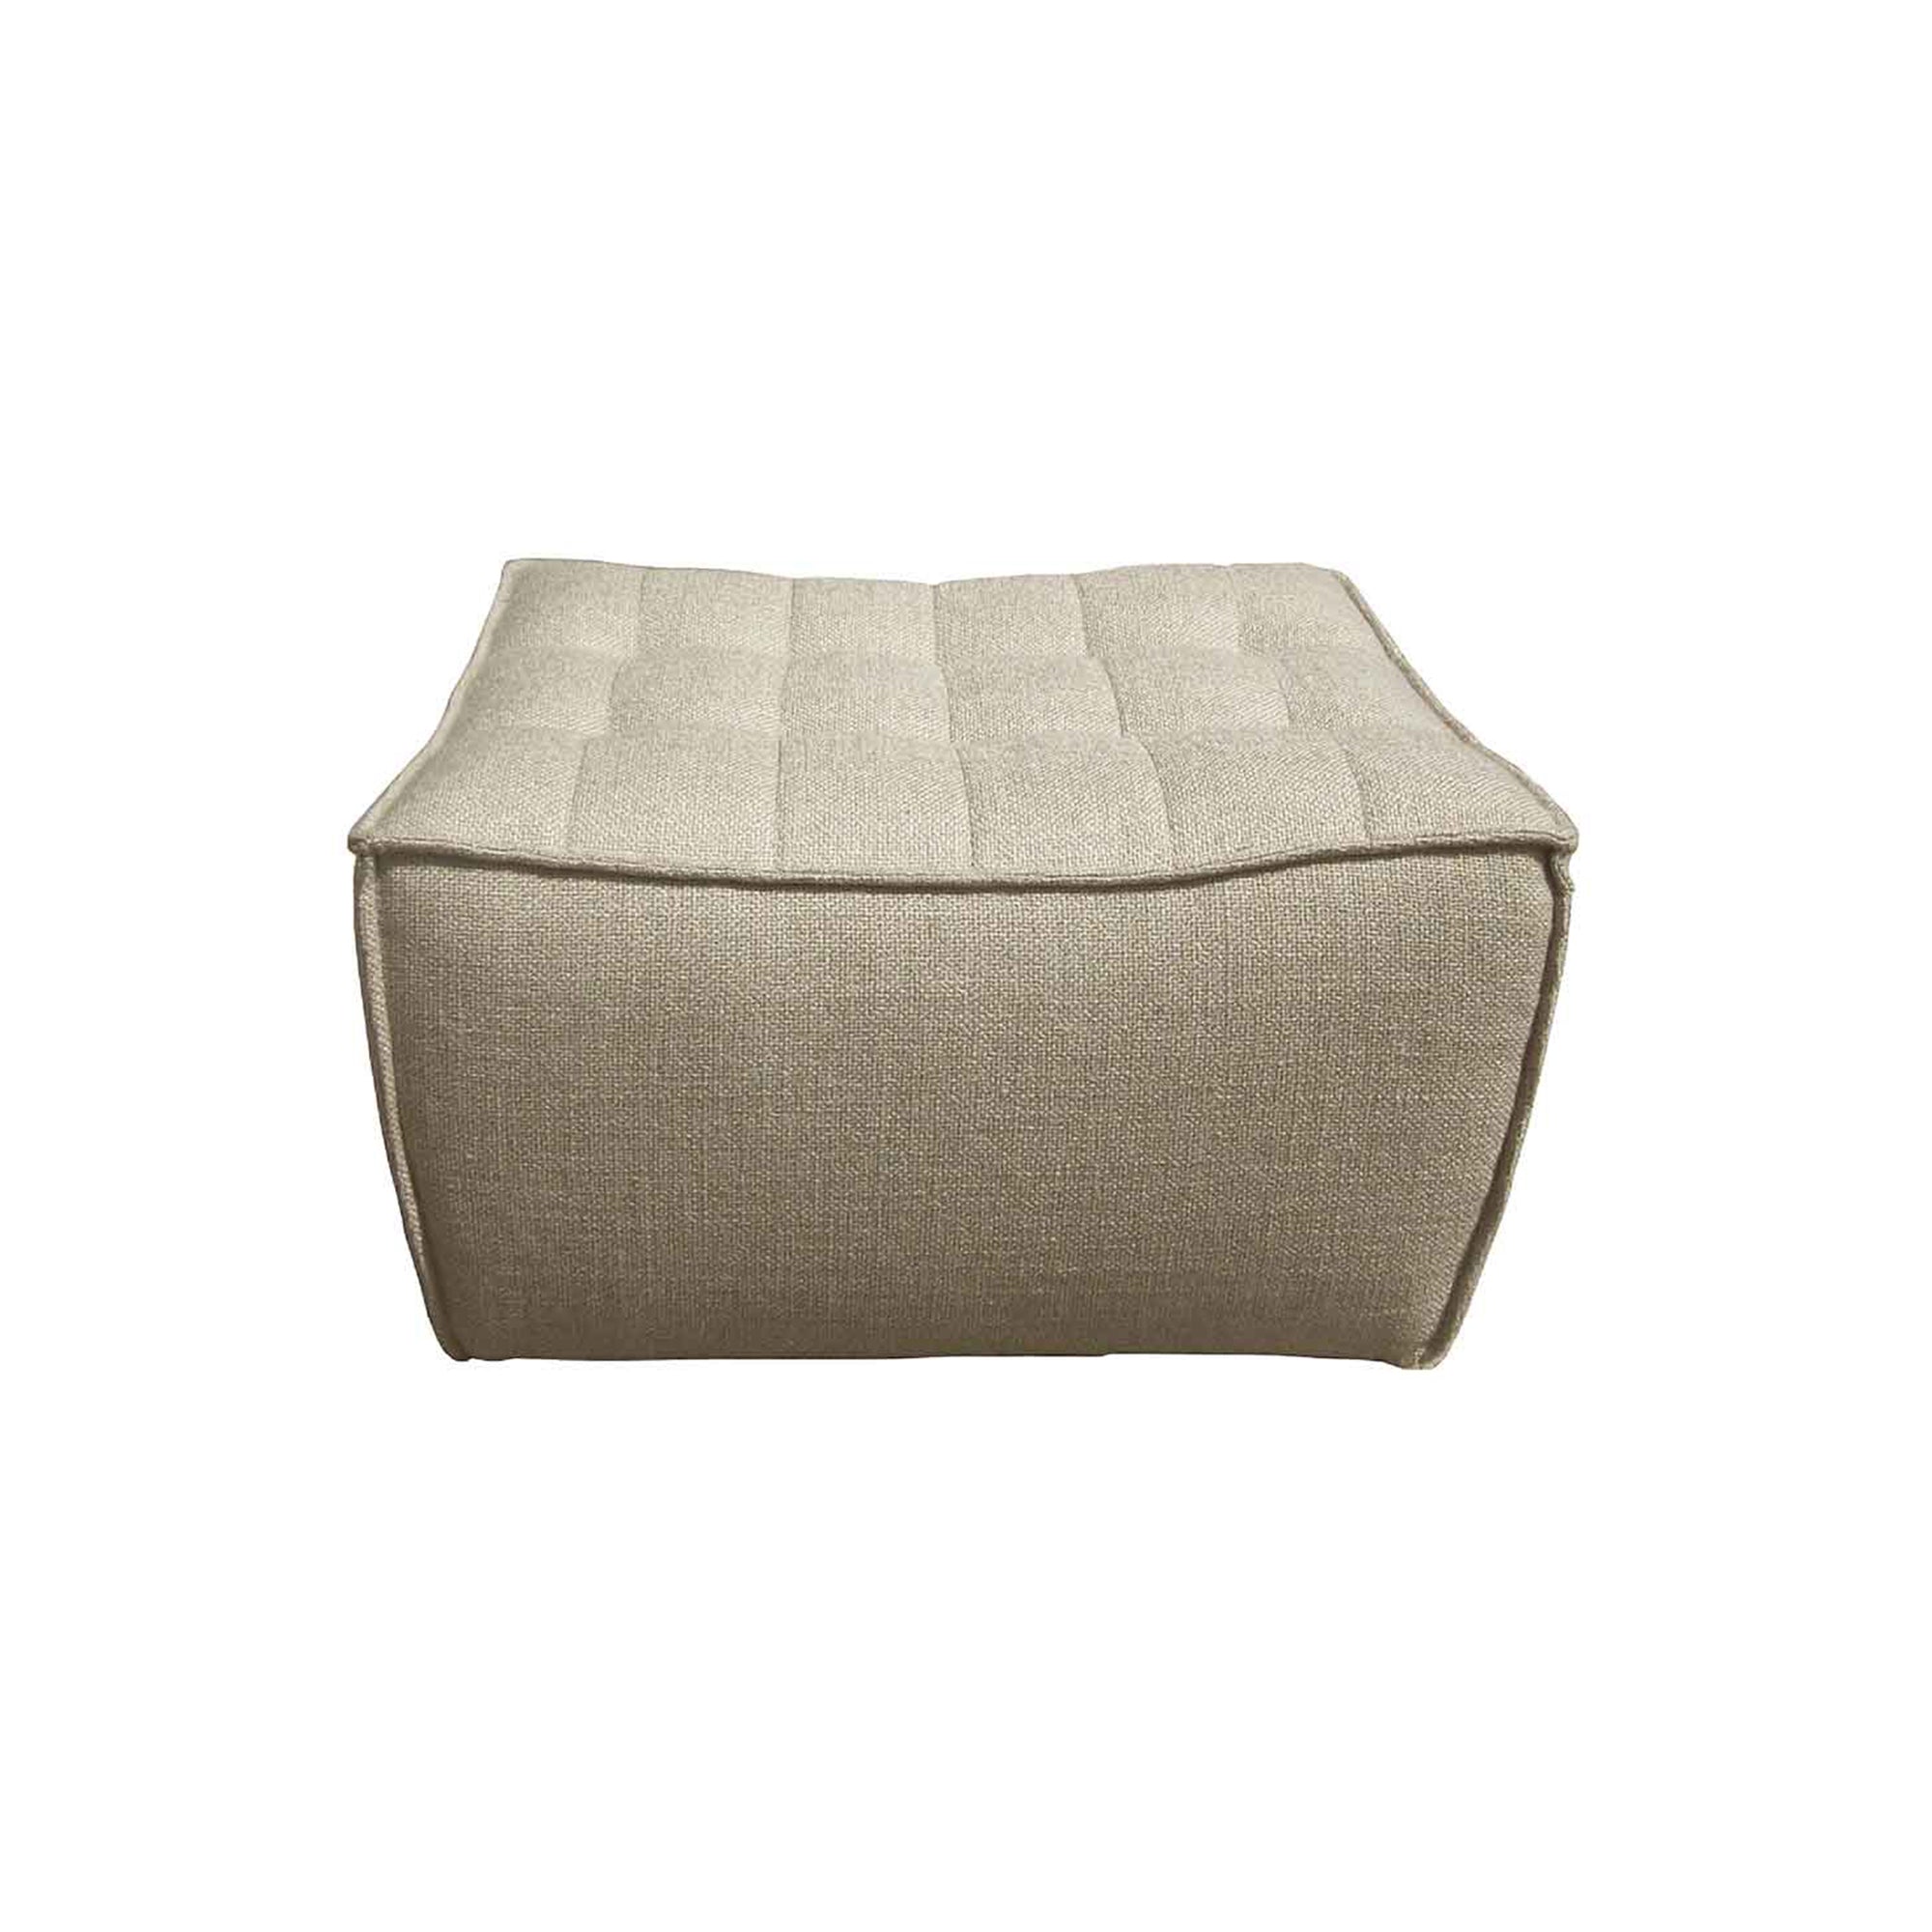 N701 sofa - footstool - beige